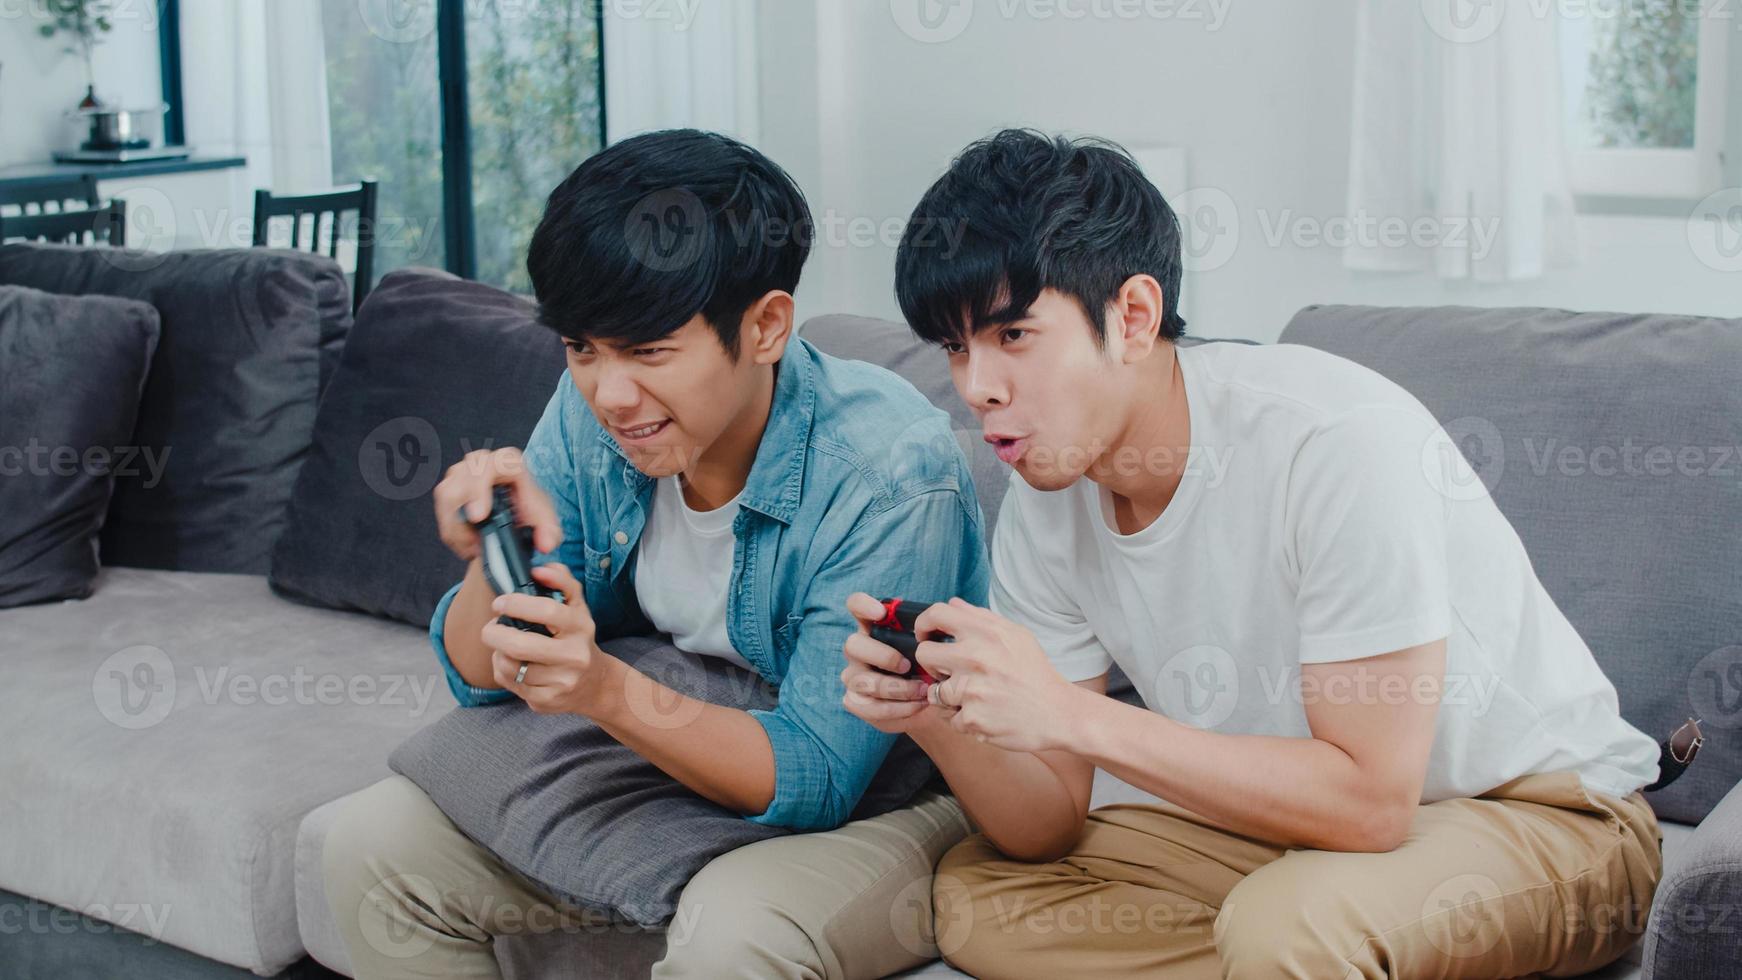 junge asiatische schwule Paare spielen zu Hause, jugendlich koreanische lgbtq-Männer mit Joystick haben einen lustigen glücklichen Moment zusammen auf dem Sofa im Wohnzimmer im Haus. foto